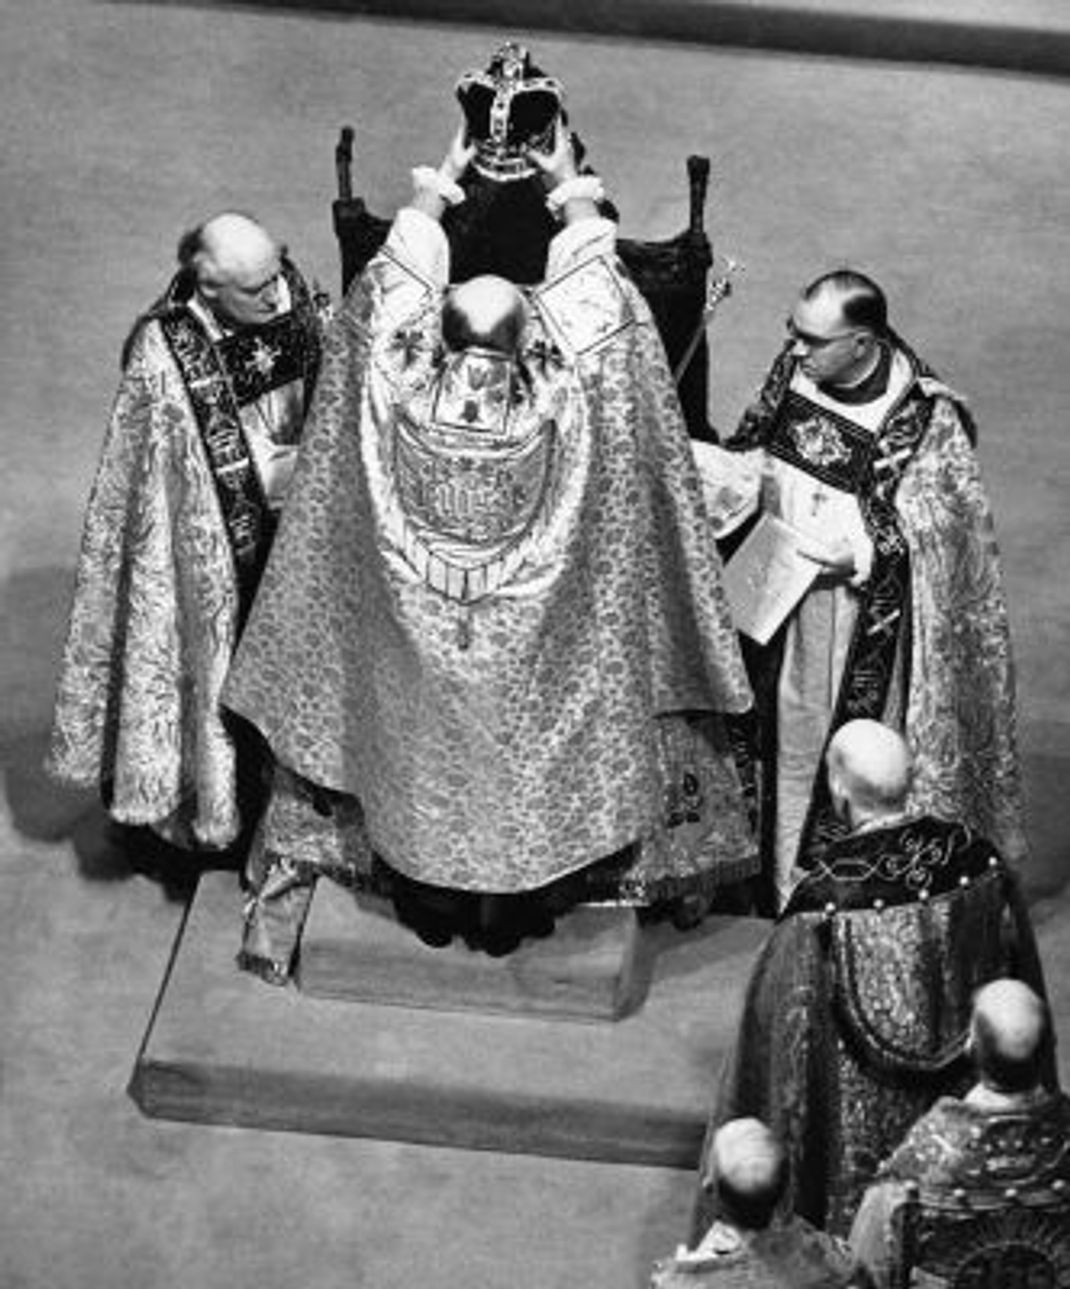 Die Krönung: Der Erzbischof von Canterbury setzt die Krone 1953 auf den Kopf Elizabeths. Sie sitzt dabei auf dem Krönungsstuhl und wird erst später auf den Thron geleitet.